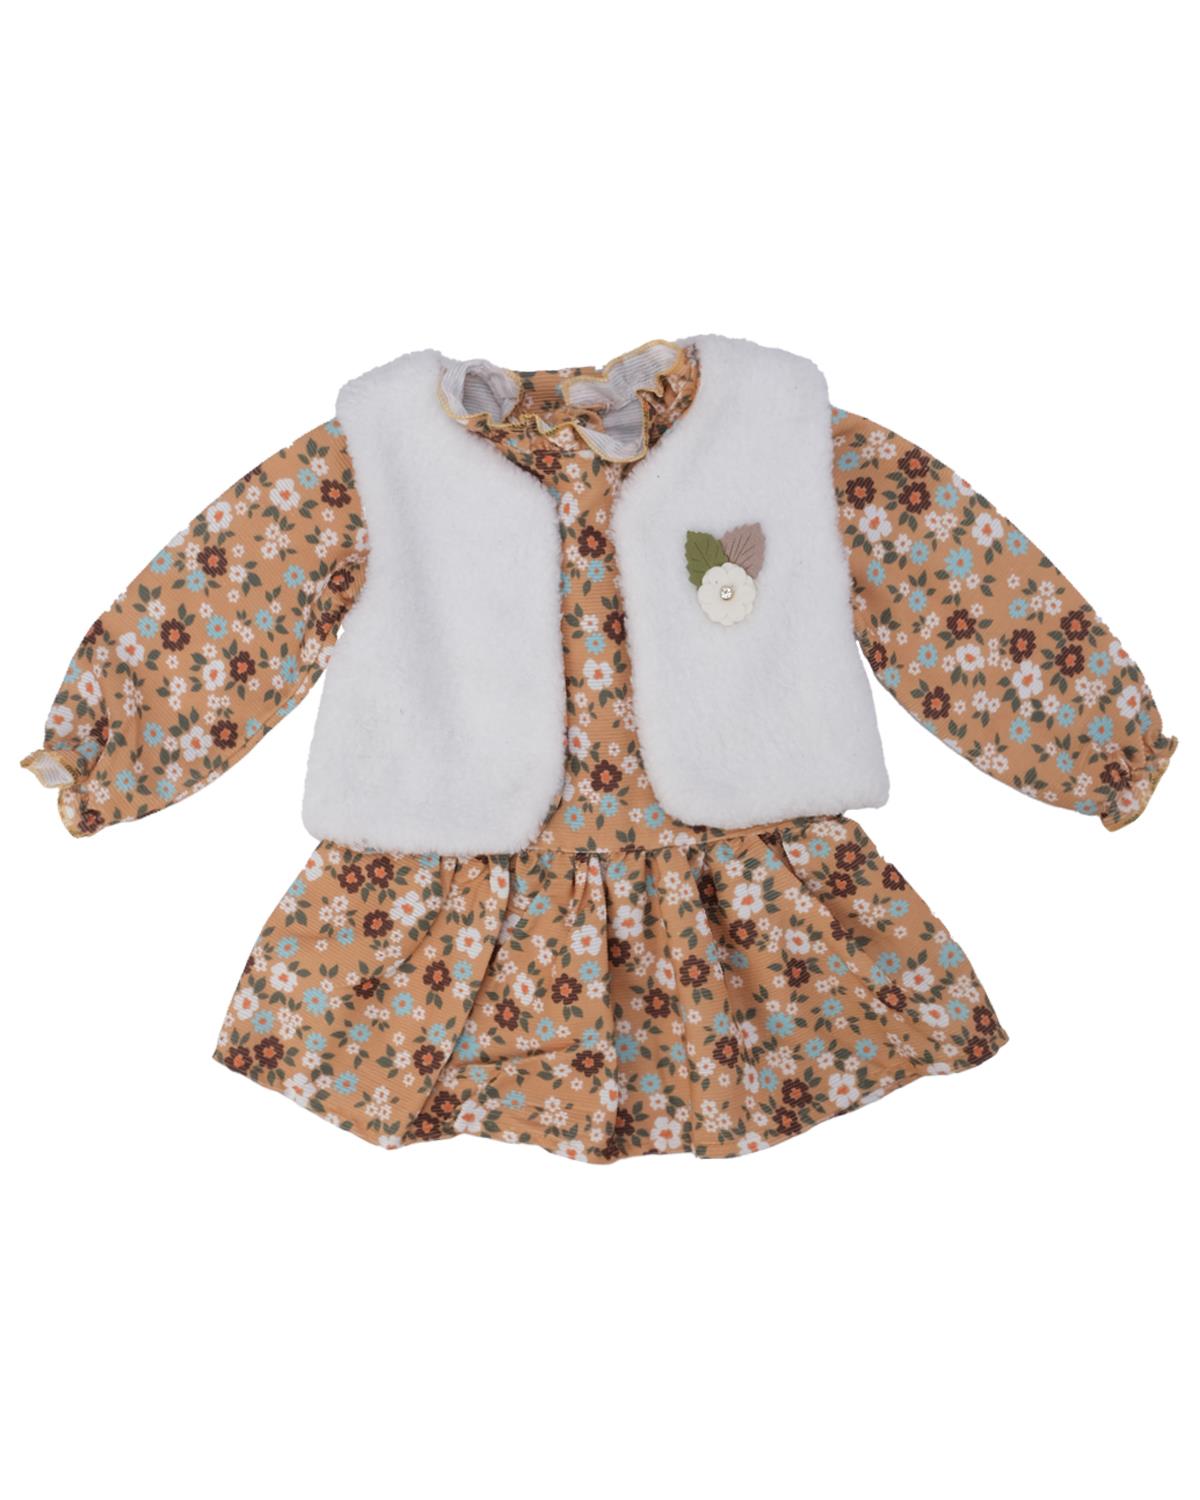 Kız Bebek Çiçek Baskılı Yelekli Fırfırlı Şönil Elbise